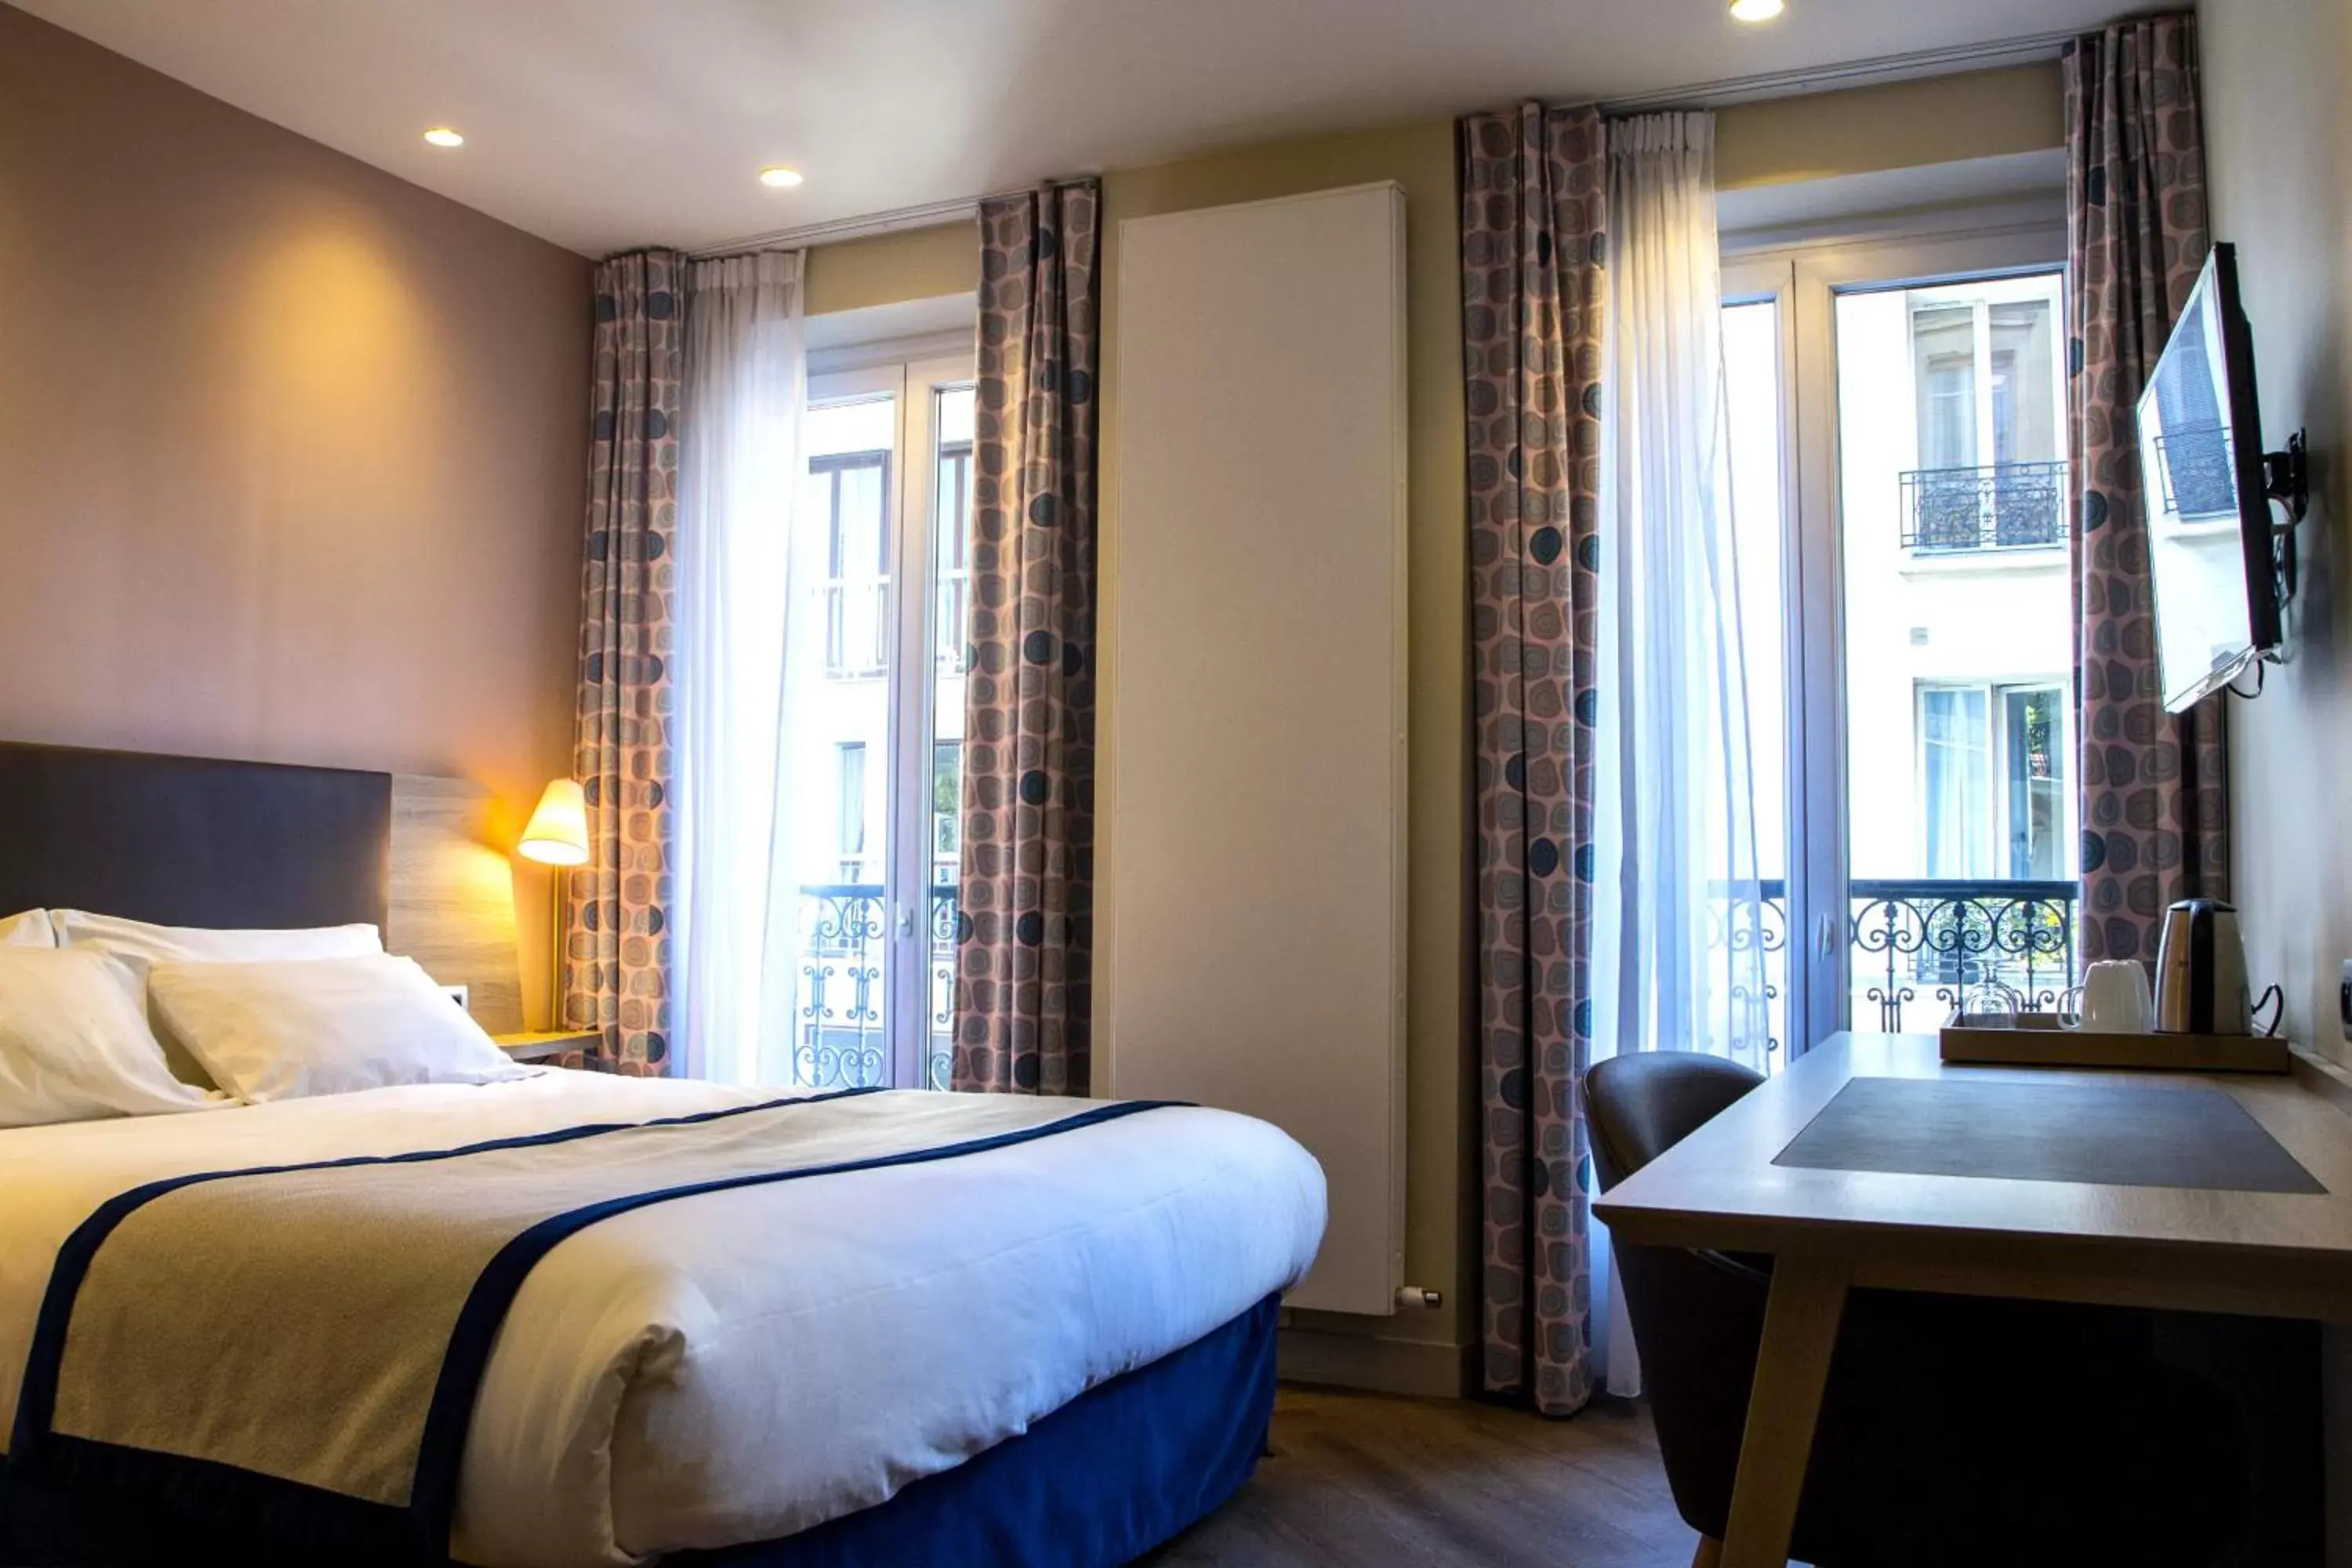 Bedroom, Bed in Hôtel de Sévigné